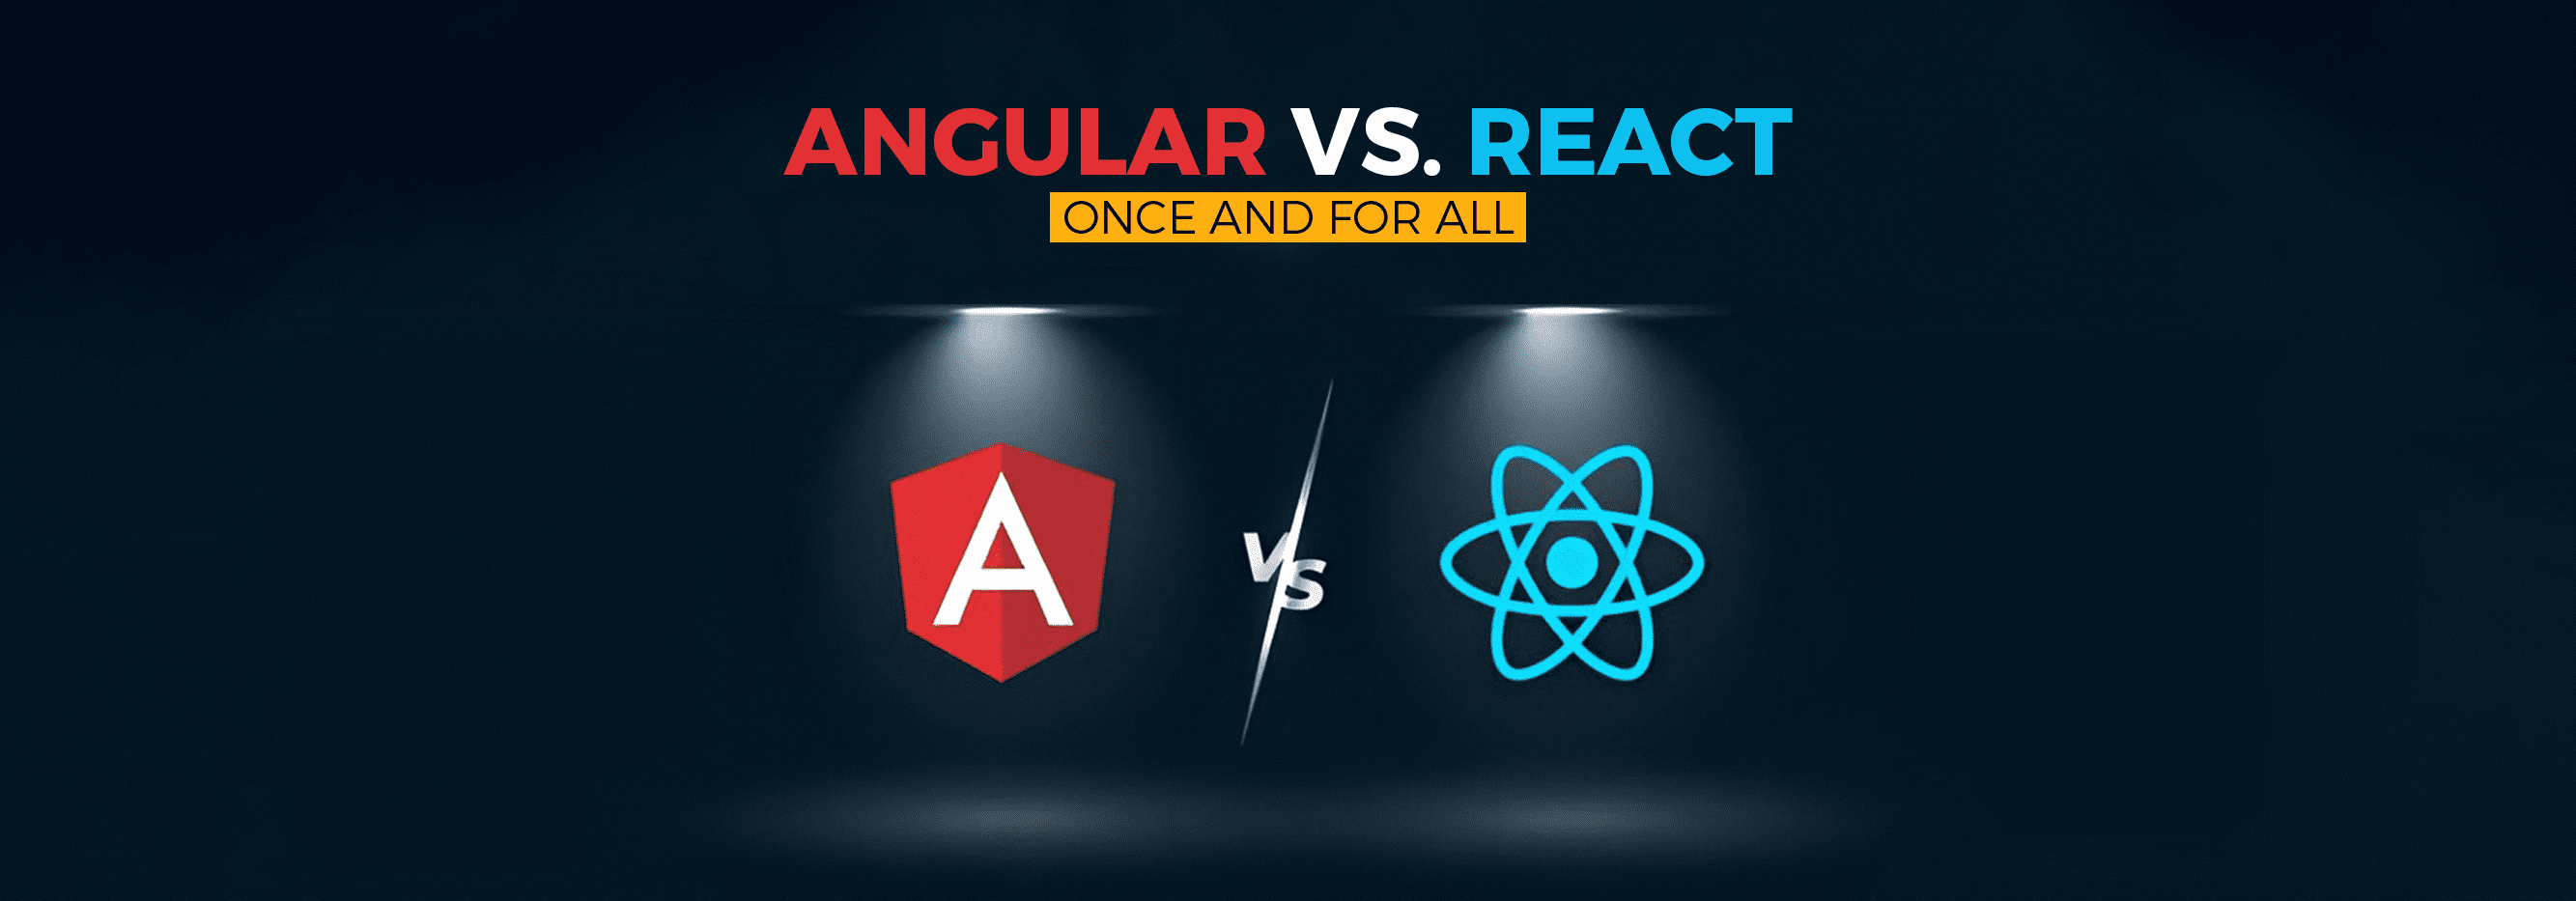 Angular vs. React Once and for all_banner